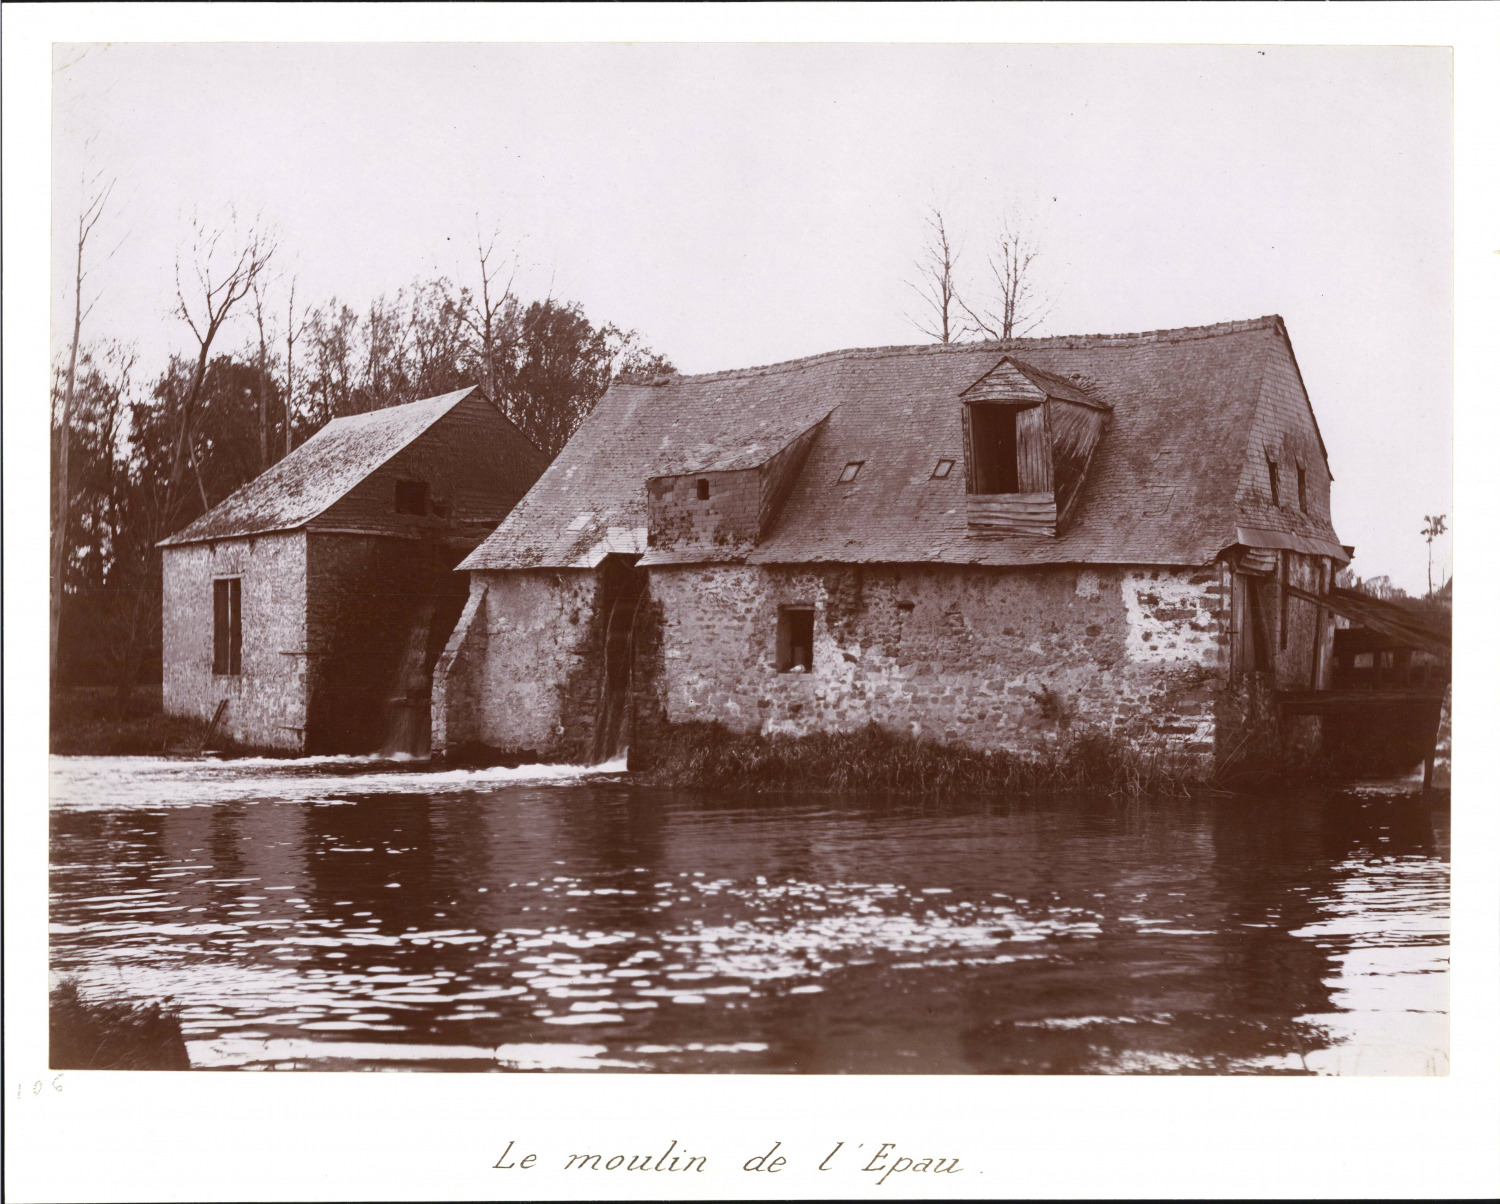 France, le Moulin de l'Epau, vintage print, ca.1880 vintage print print print